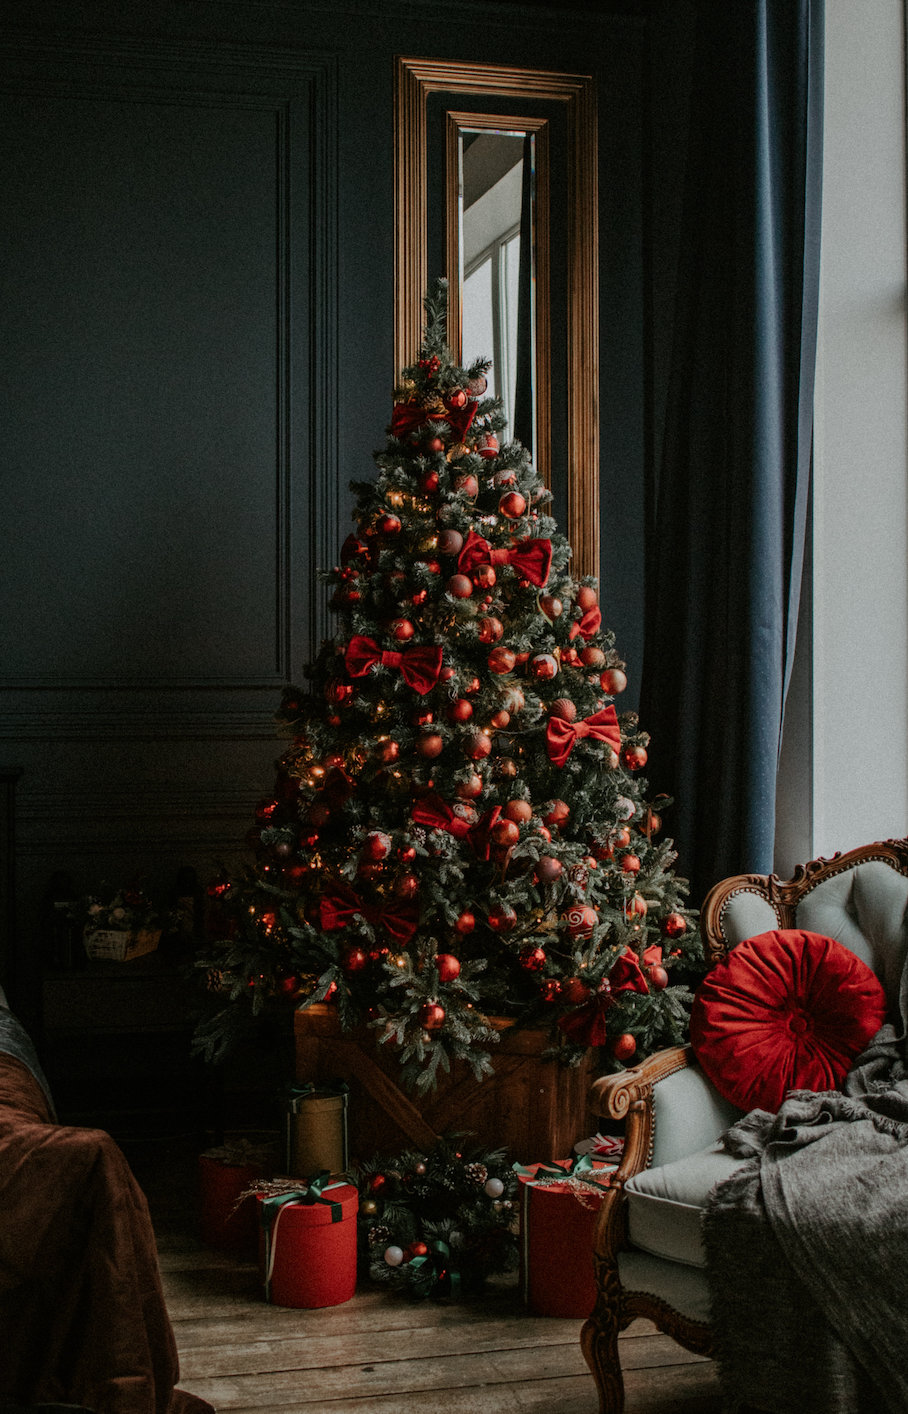 Inspiring Christmas Decoration Ideas for a Festive Home